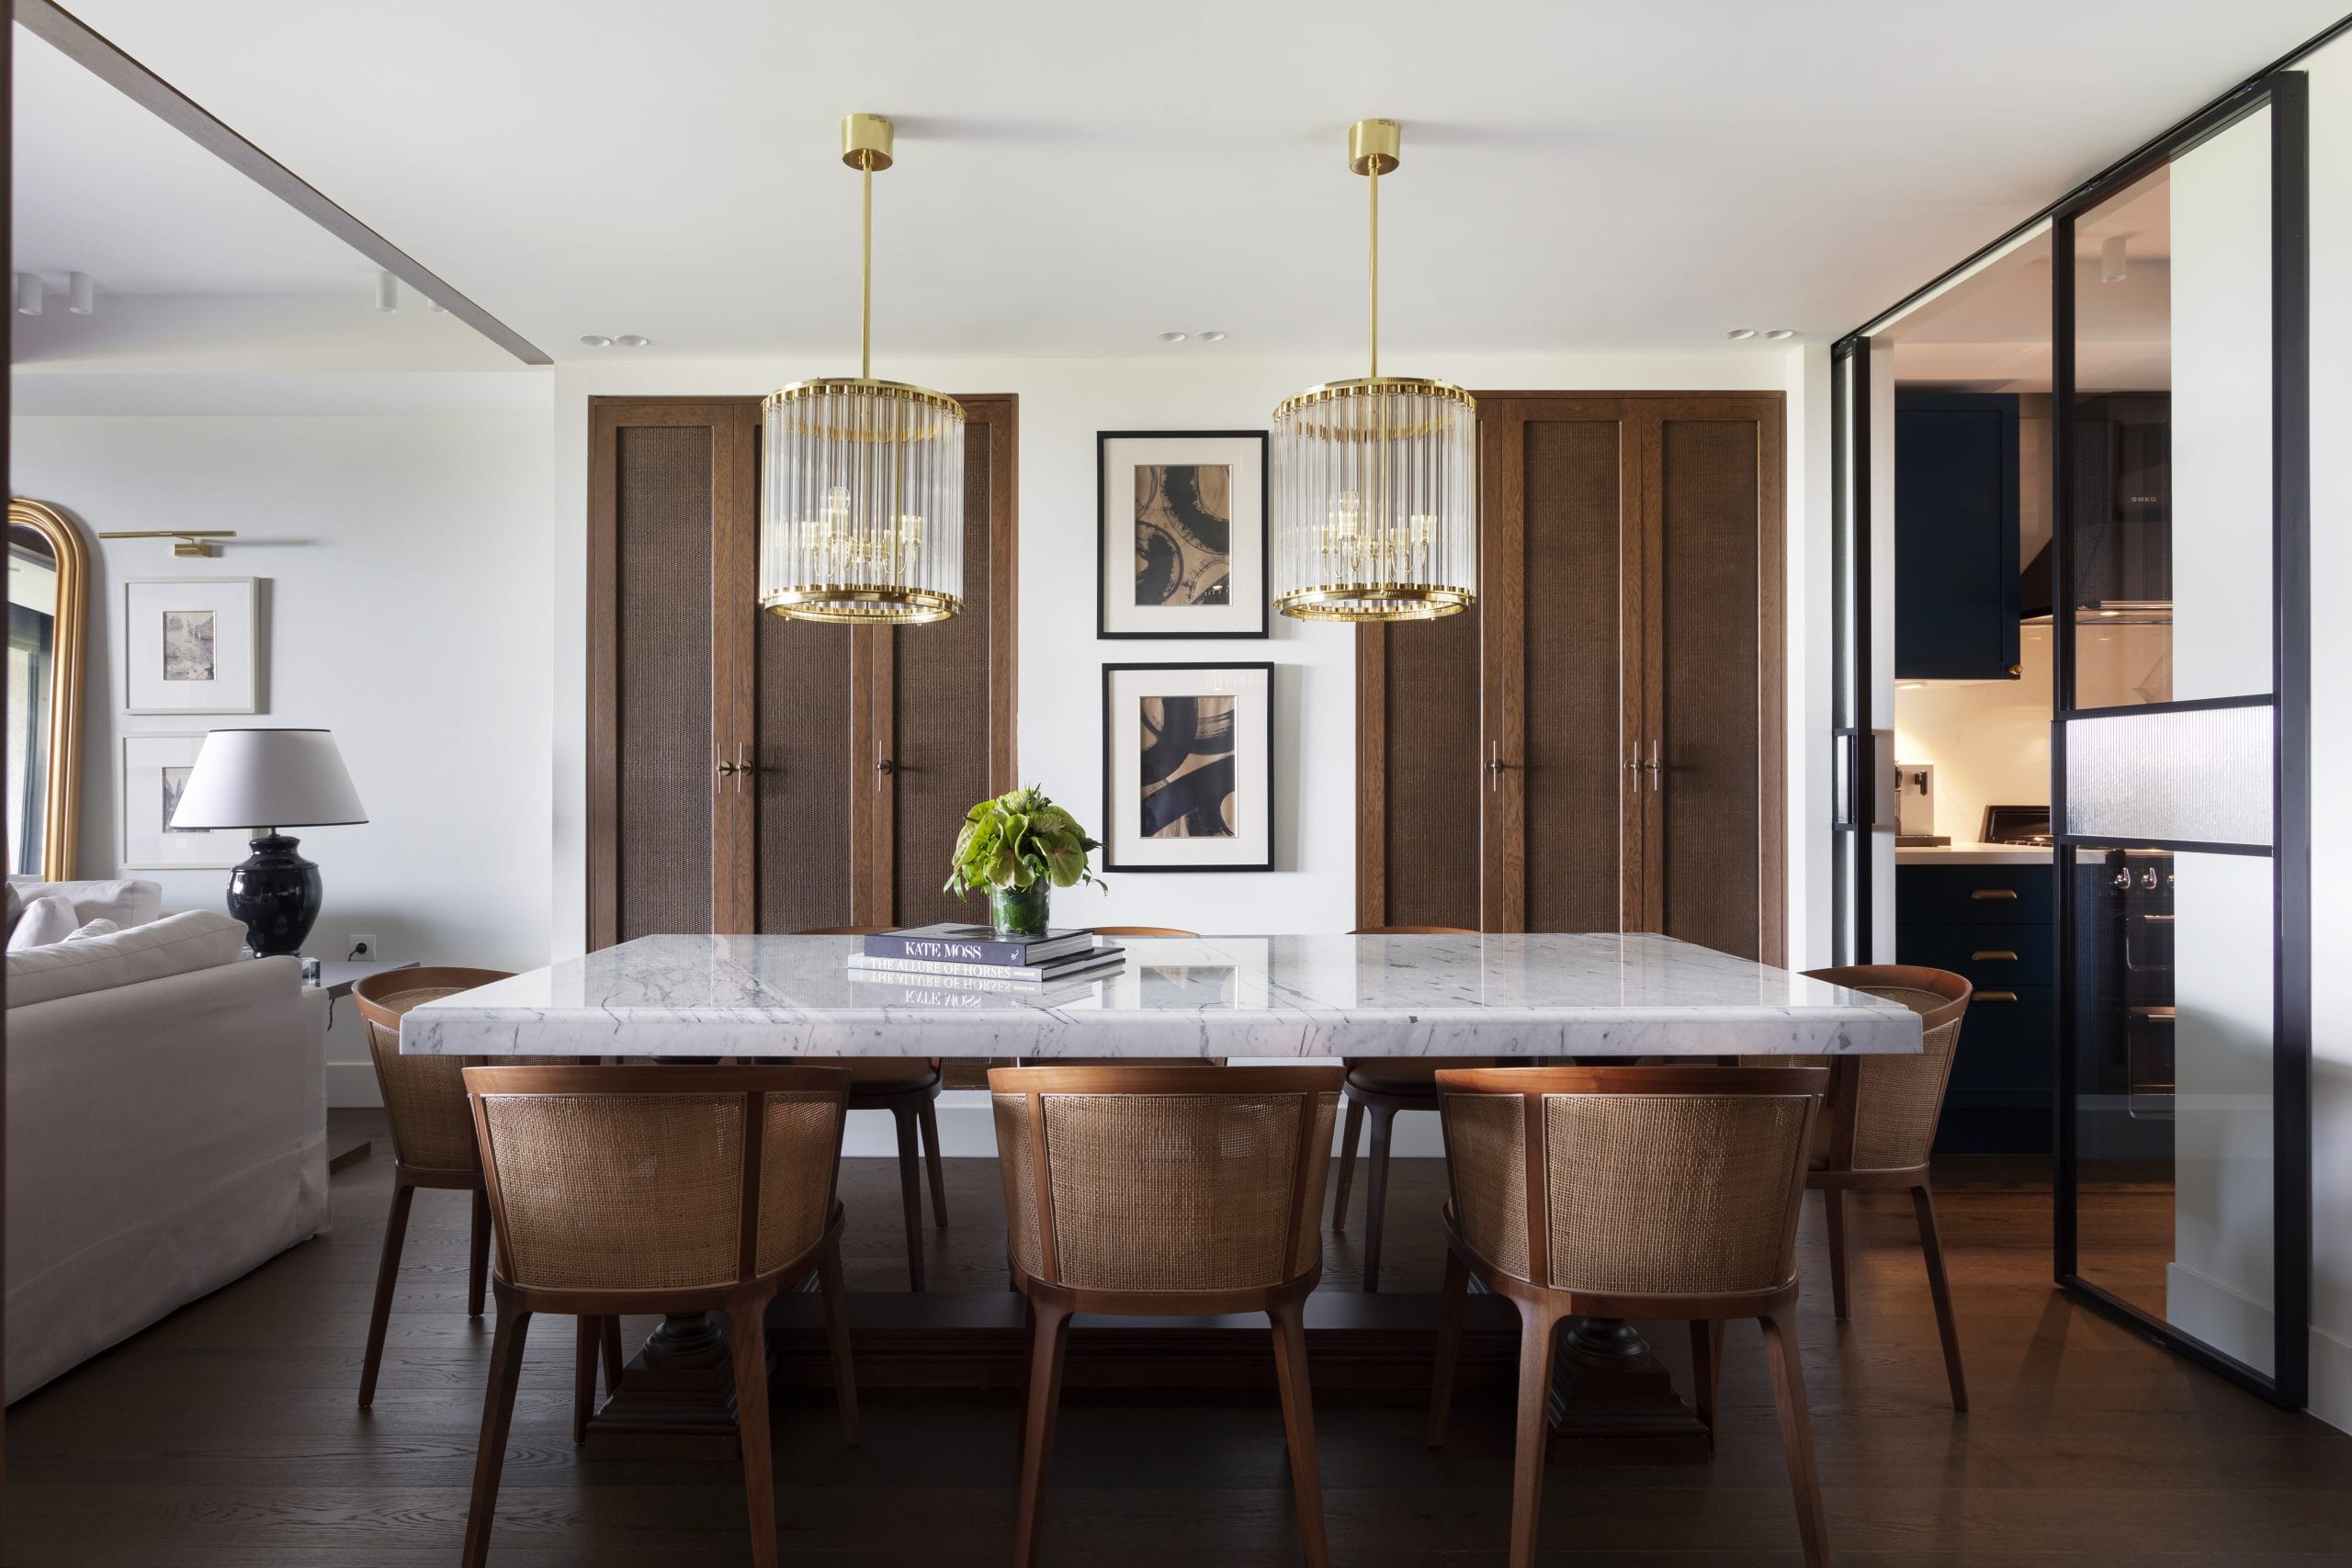 Dining room furniture arrangement by Decorilla designer Meric S